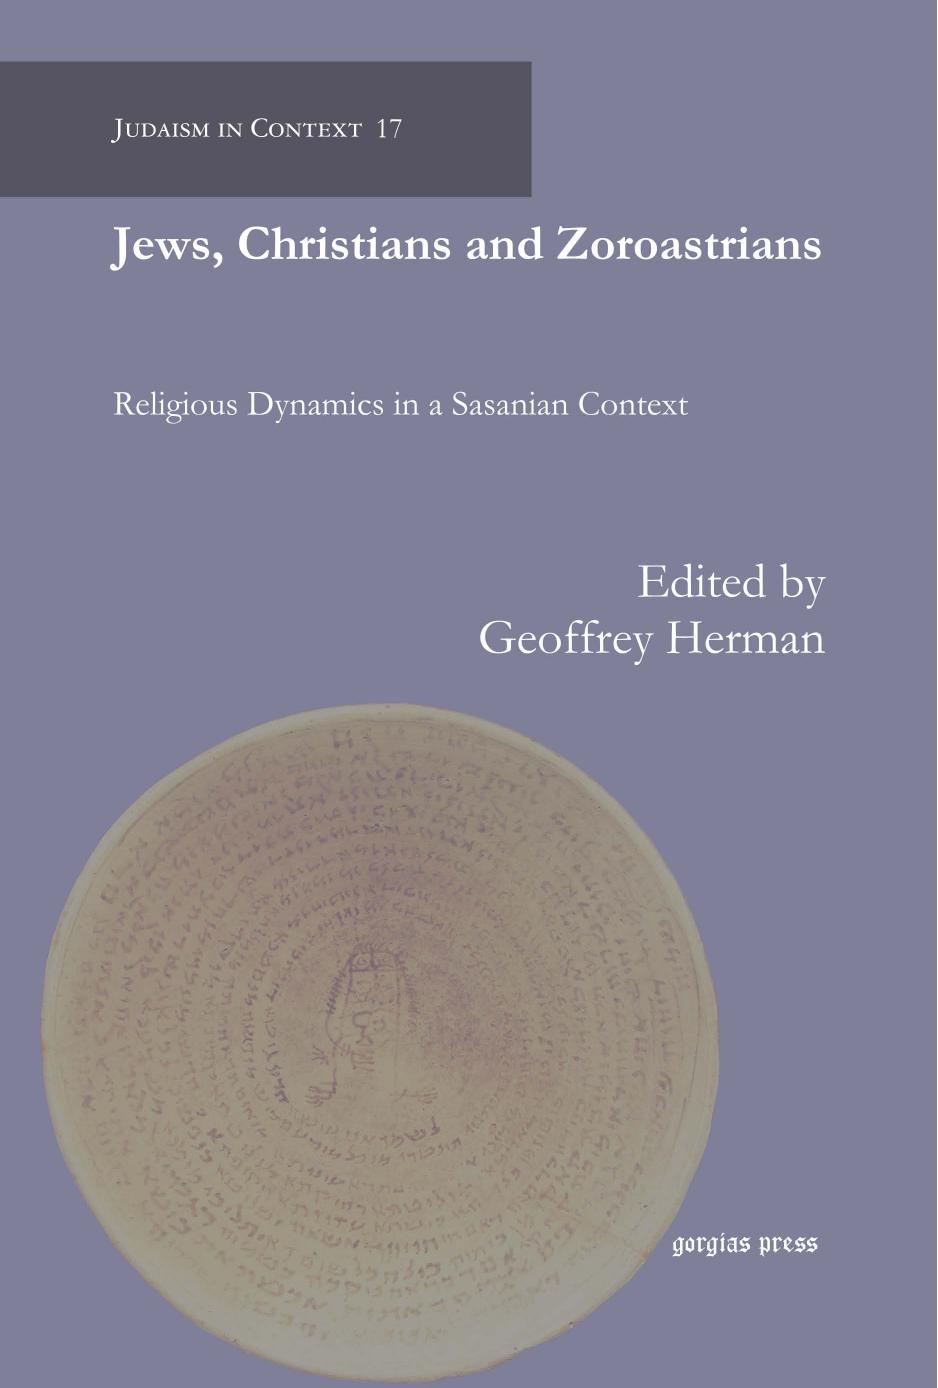 Jews, Christians and Zoroastrians by Geoffrey Herman